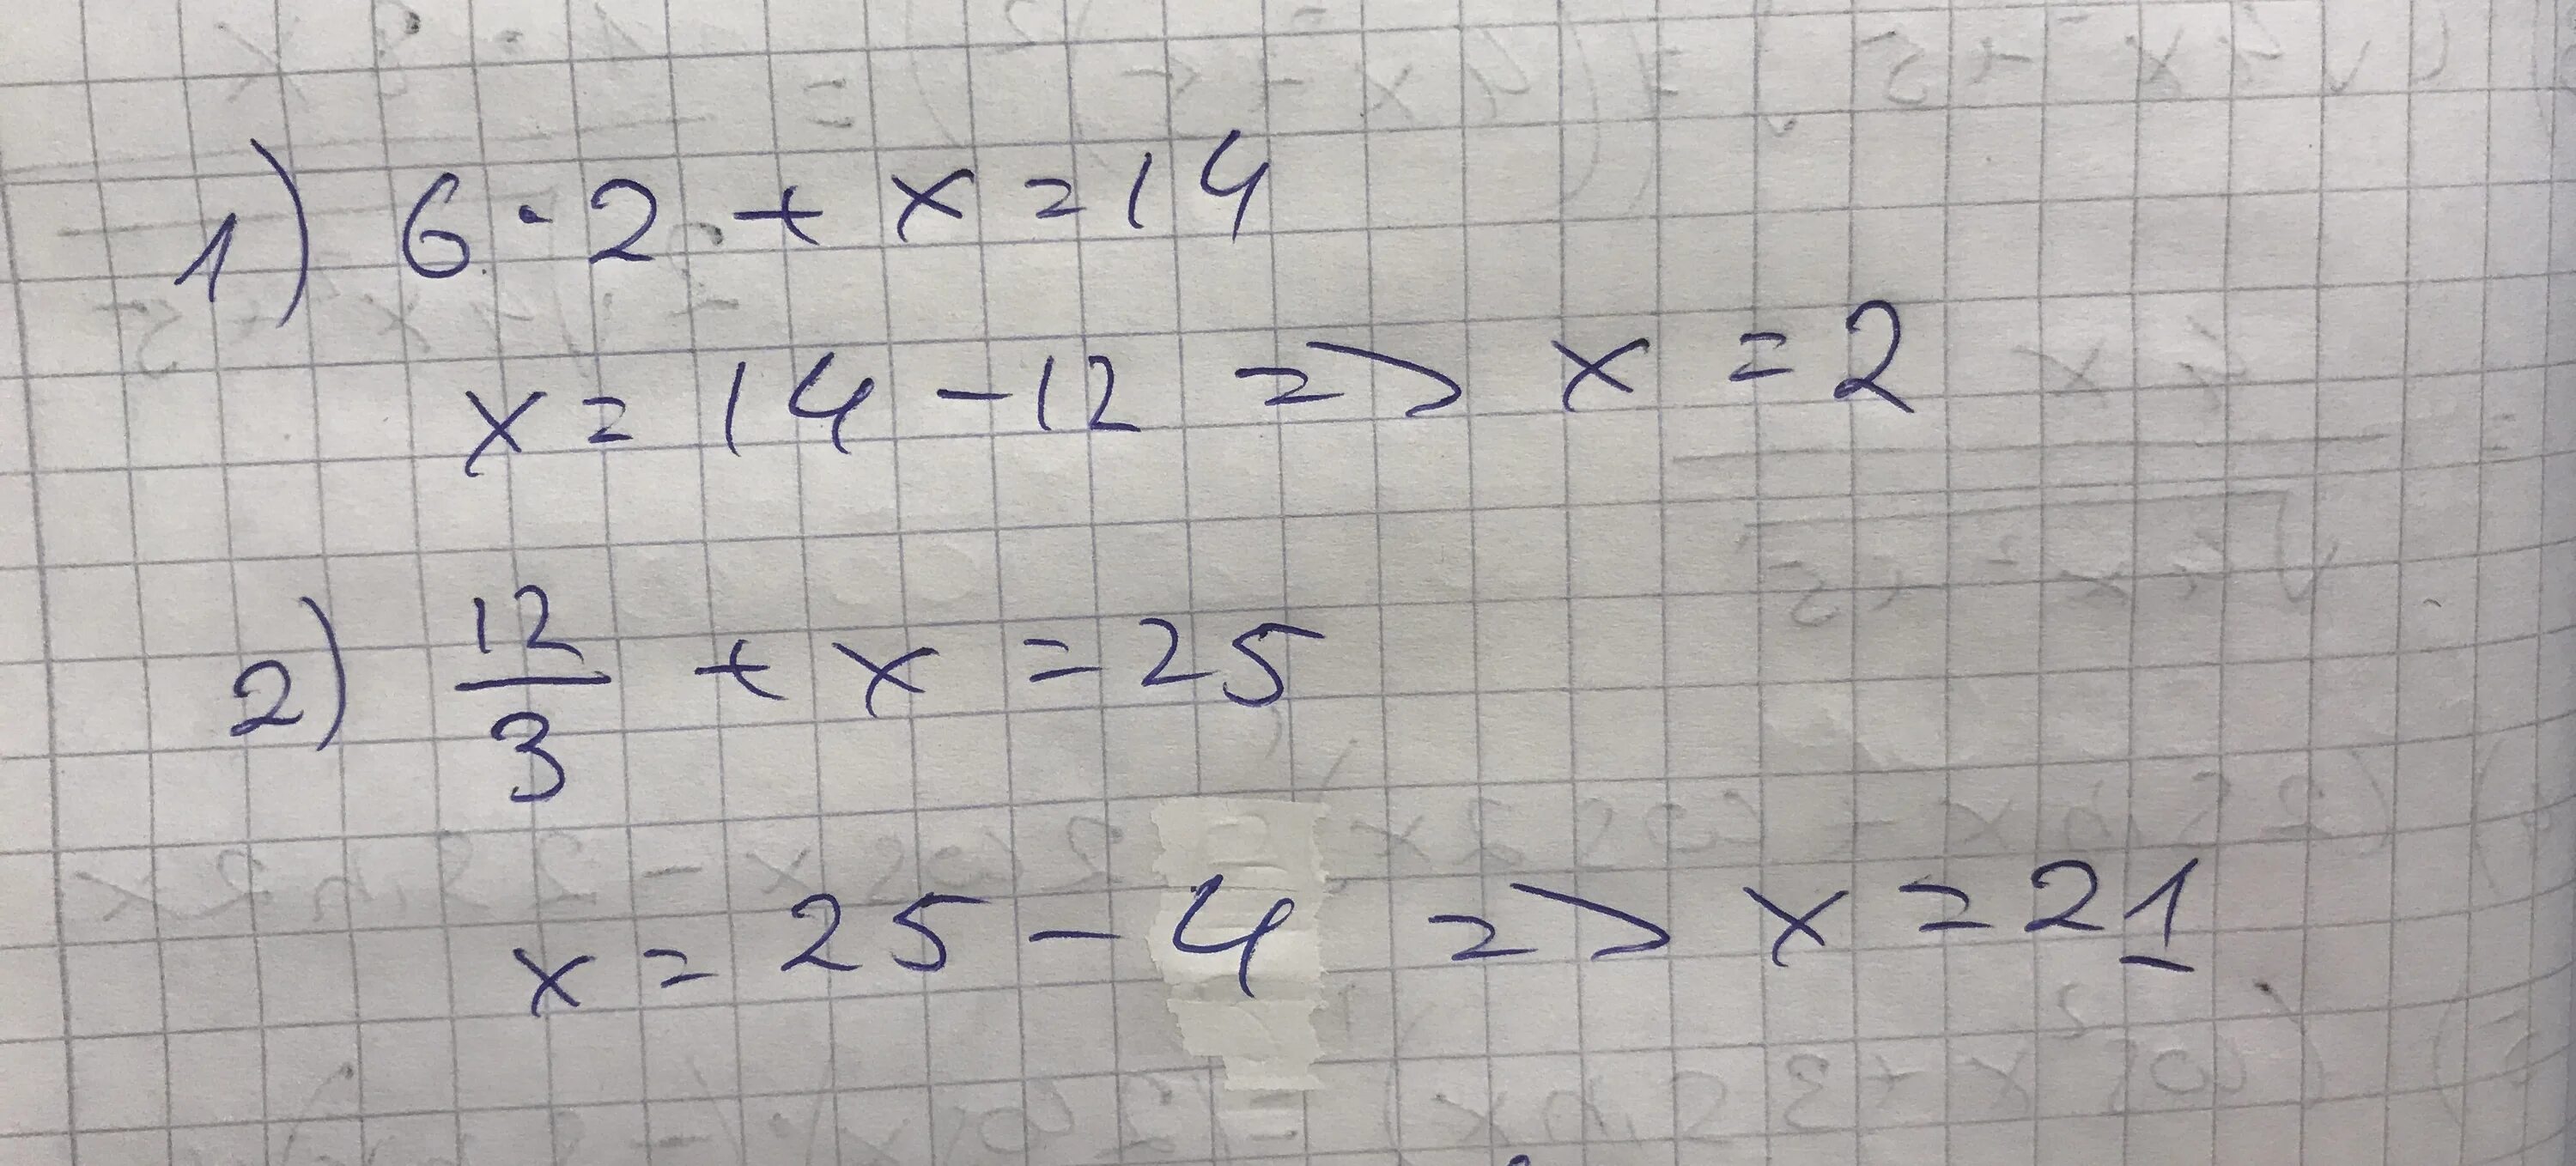 Решение уравнения 12 разделить на Икс равно 3. Уравнение Икс разделить на 3 равно 6. Минус 2 Икс деленное на 5 и минус 2 Икс деленное на 3. Икс равно.